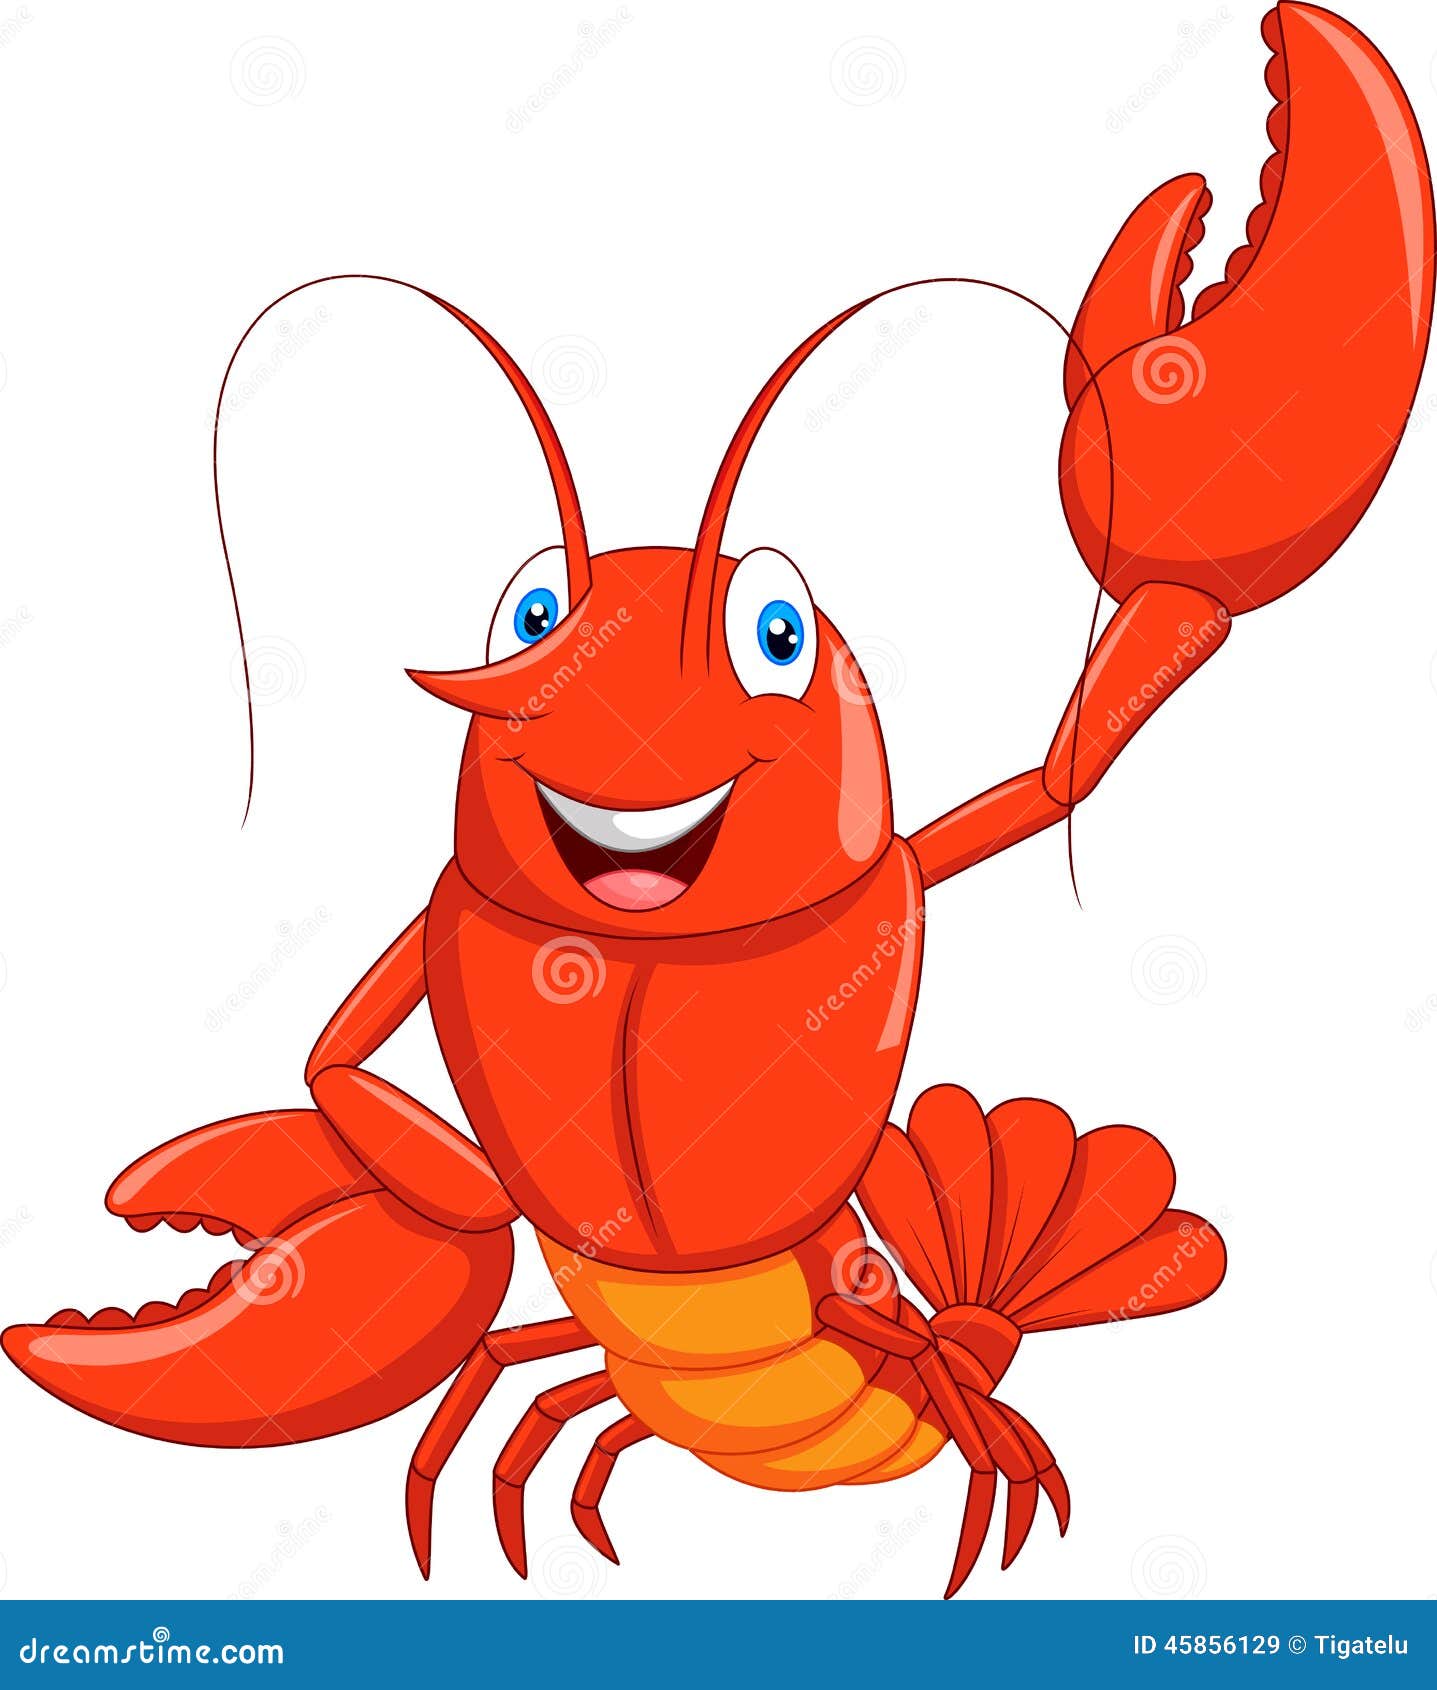 Cartoon Lobster Stock Illustrations – 4,957 Cartoon Lobster Stock  Illustrations, Vectors & Clipart - Dreamstime